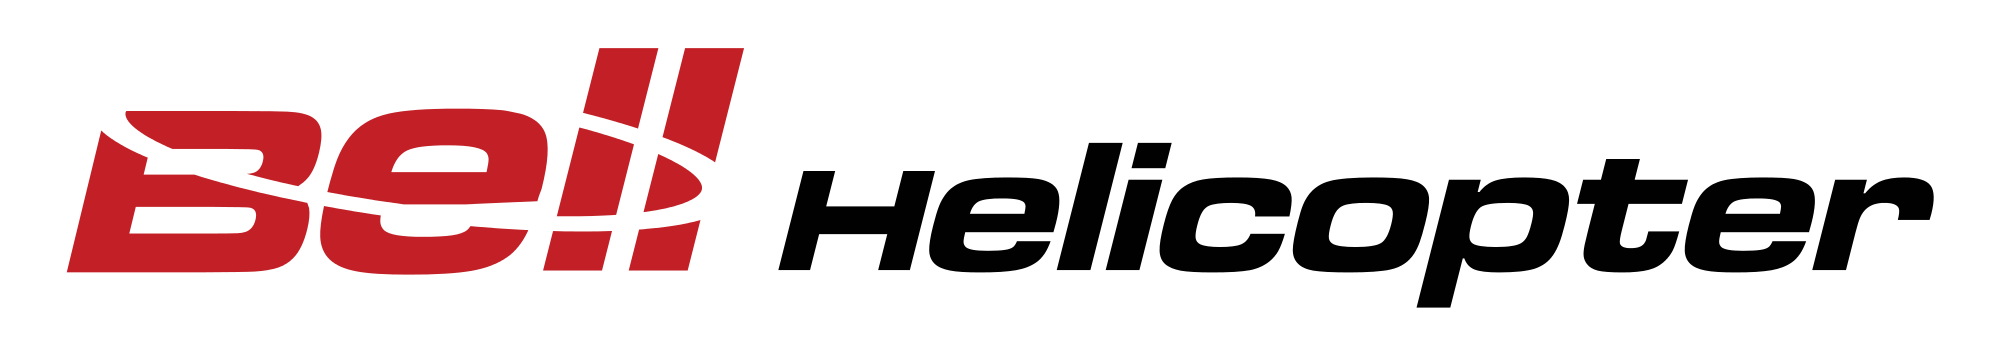 Bell Vector Logo